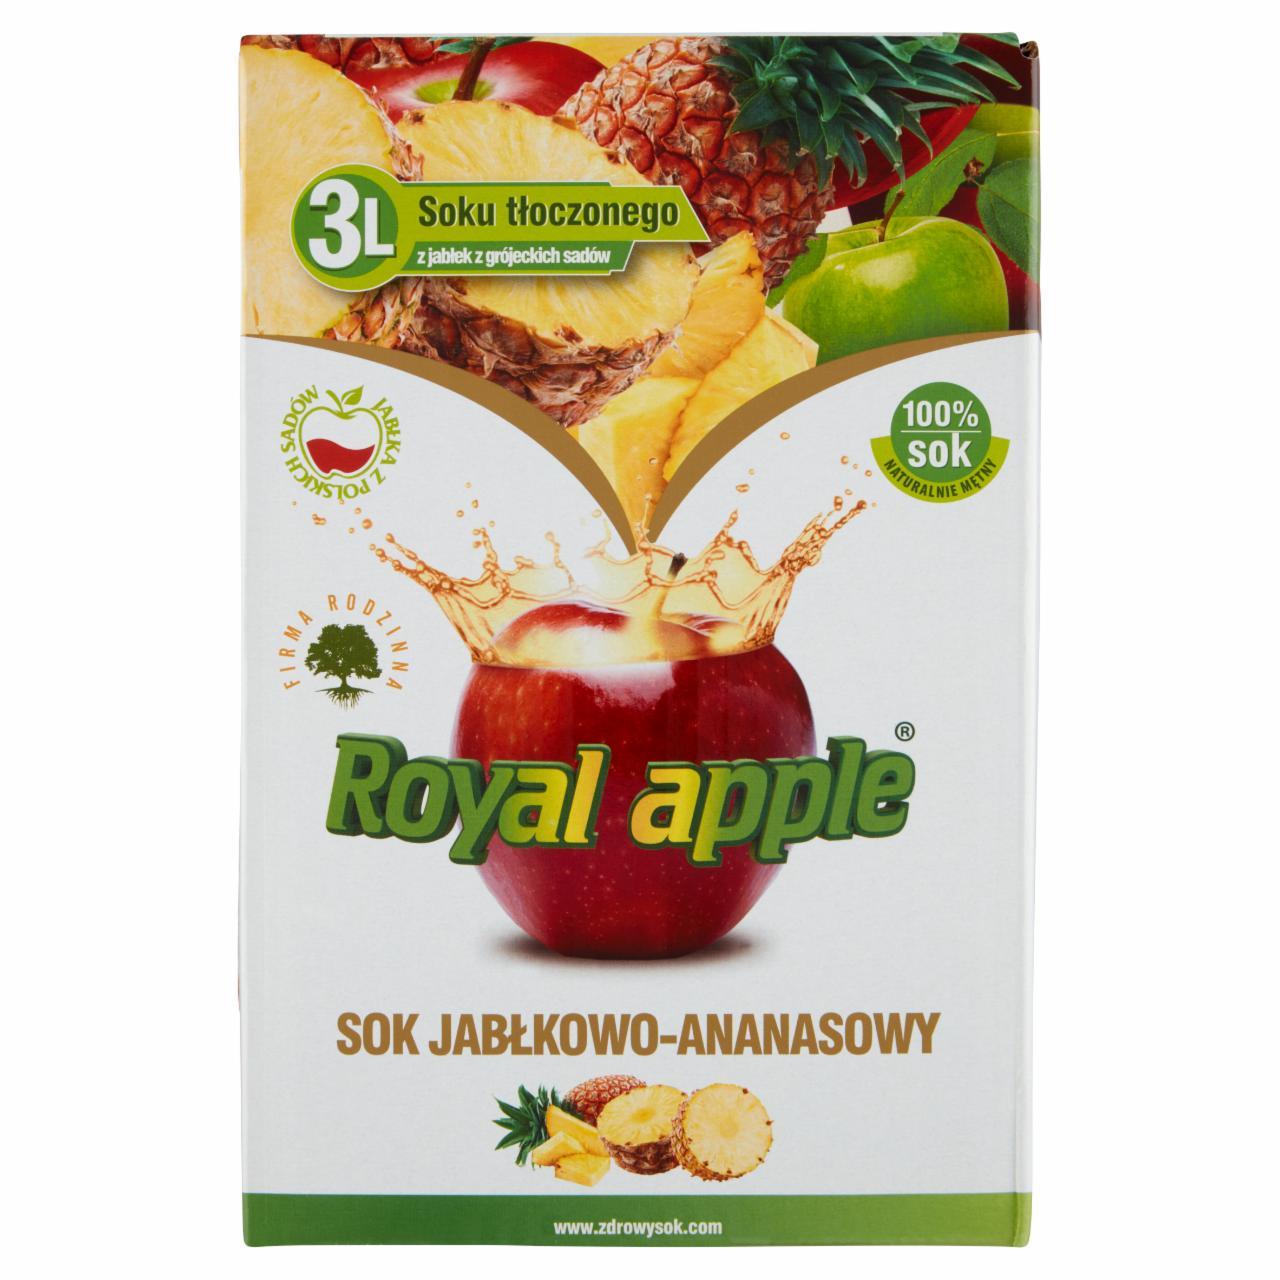 Photo - Royal apple Apple-Pineapple Juice 3 L